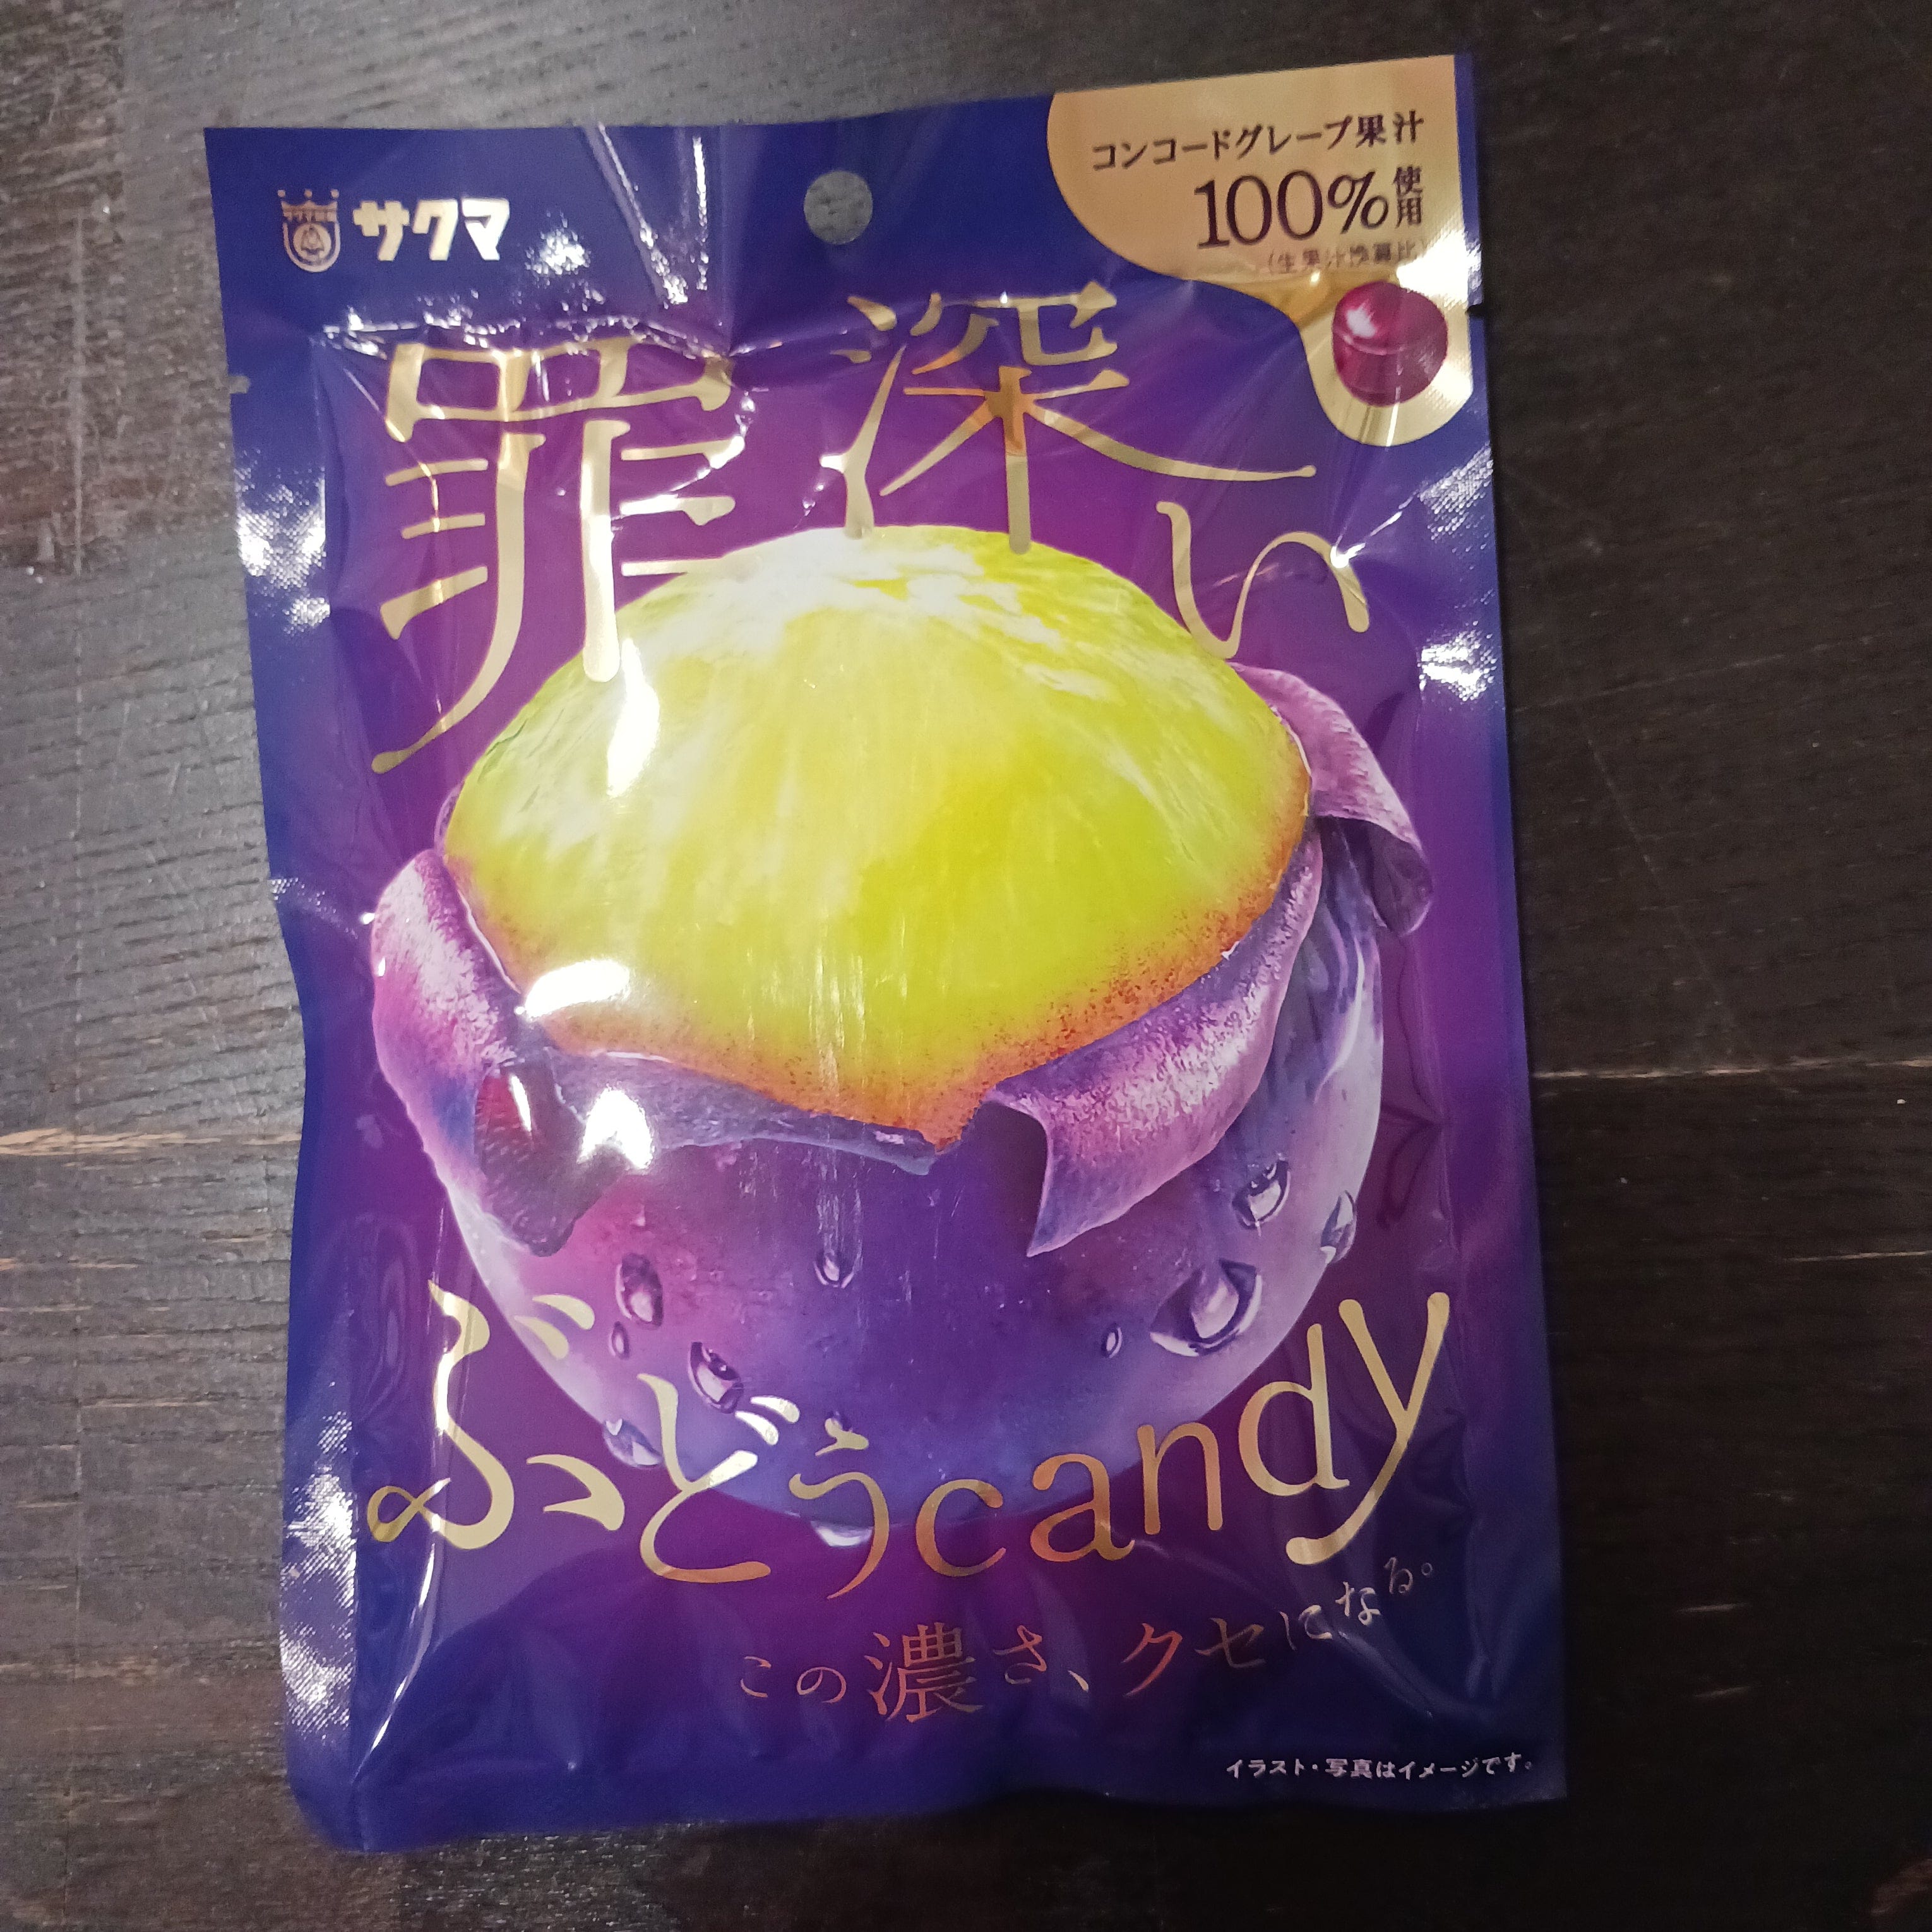 Daiei Sakuma Grape Candy Kawaii Gifts 4903901187459